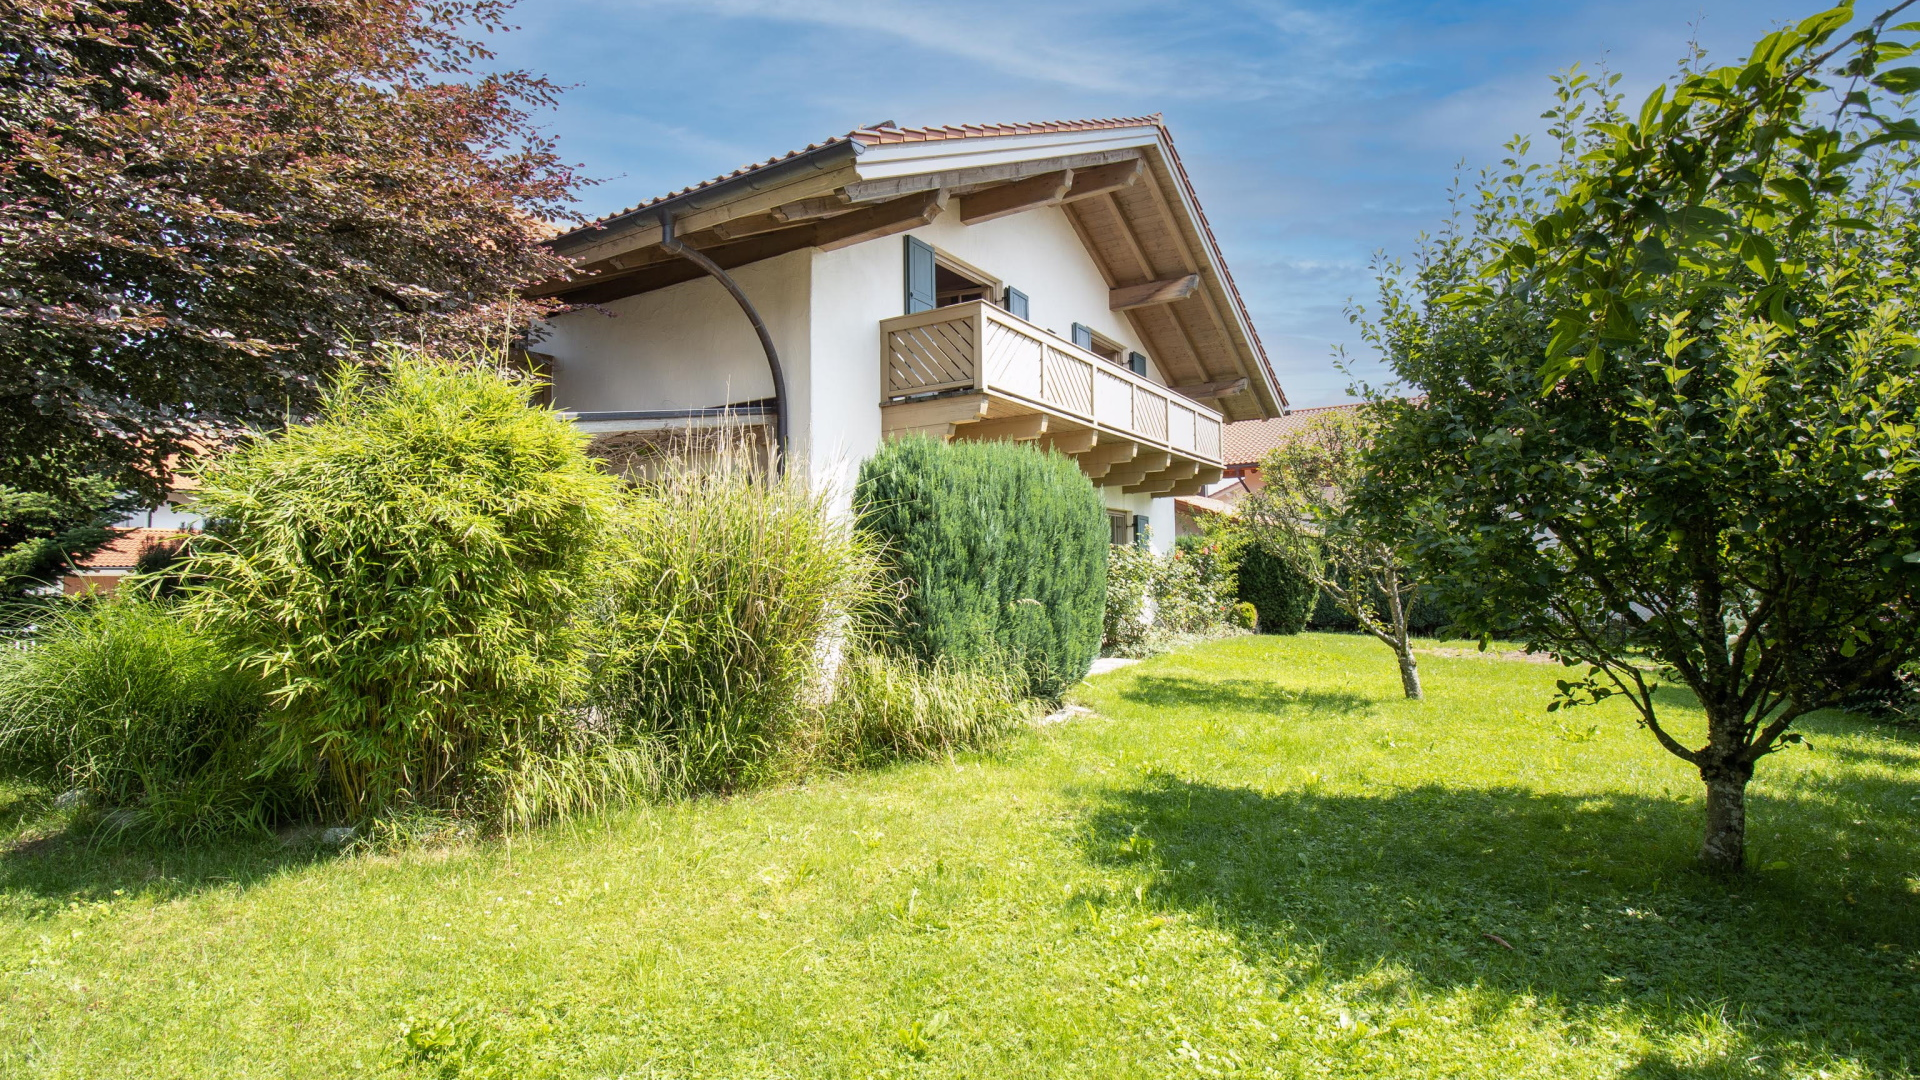 Lacroix Real Estate - Makler für Immobilien in Grünwald